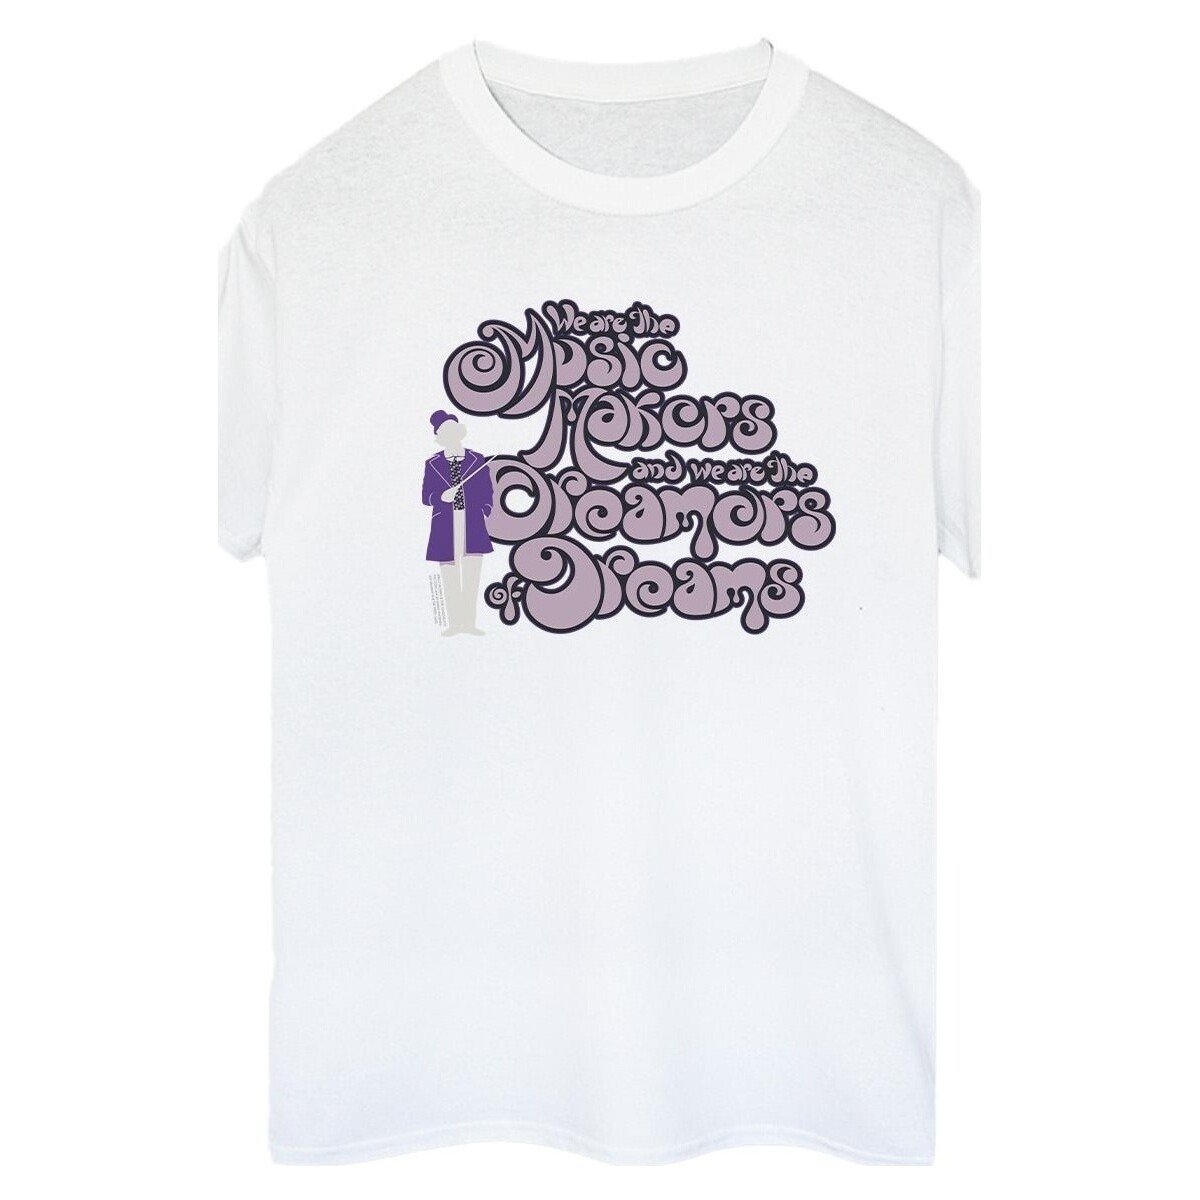 textil Mujer Camisetas manga larga Willy Wonka Dreamers Text Blanco